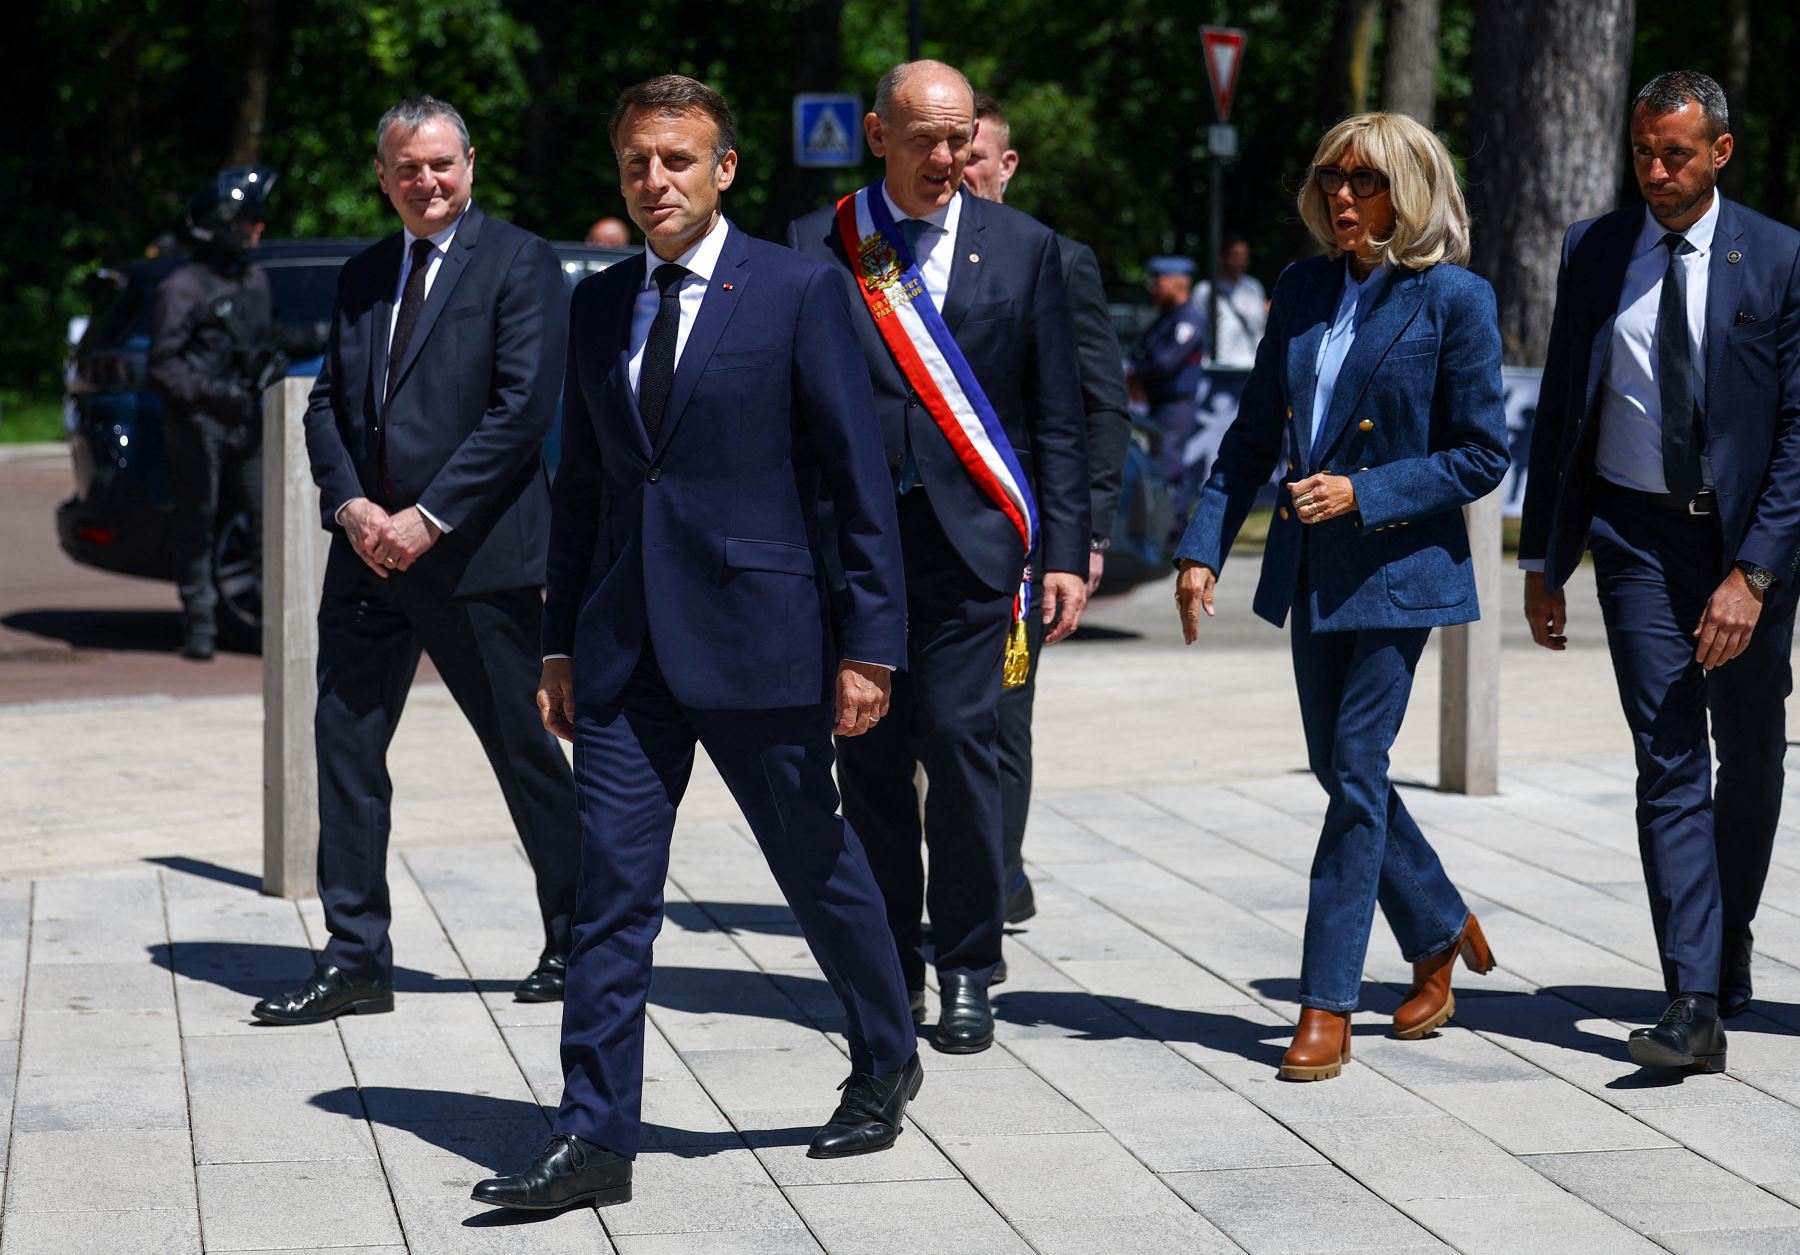 El presidente de Francia, Emmanuel Macron , flanqueado por su esposa Brigitte Macron , camina con Daniel Fasquelle , alcalde de Le Touquet-Paris-Plage, antes de votar para las elecciones al Parlamento Europeo en Le Touquet, al norte de Francia.
Foto: AFP